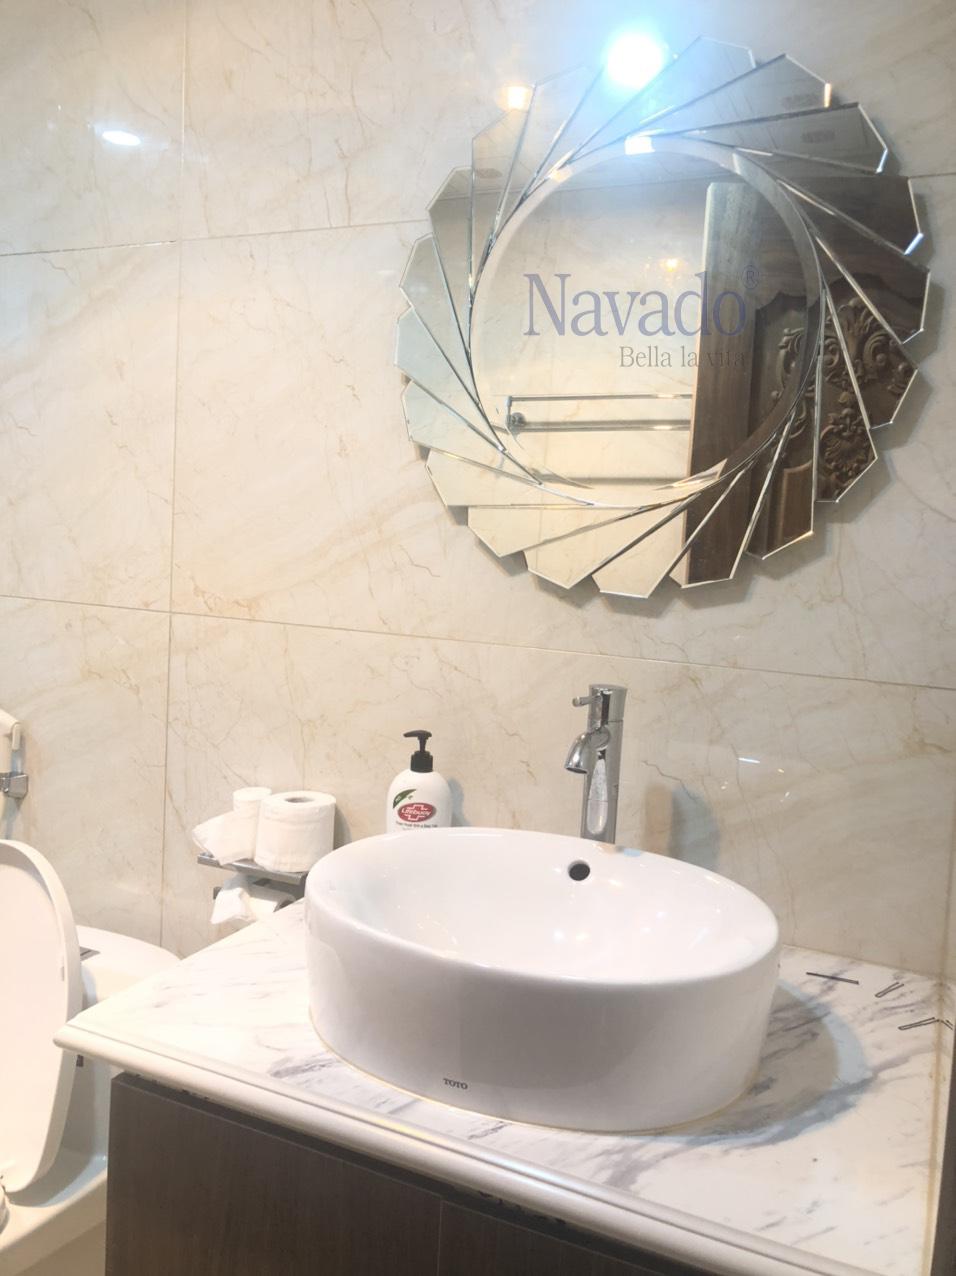 Gương phòng tắm nghệ thuật Luxury Hà Nội Navado: Với sự kết hợp giữa nghệ thuật và công nghệ, gương phòng tắm nghệ thuật Luxury Hà Nội Navado sẽ mang đến cho bạn một trải nghiệm tắm đầy đẳng cấp và thú vị. Với thiết kế độc đáo và cực kỳ sang trọng, sản phẩm này là sự lựa chọn hoàn hảo cho những ai yêu thích phong cách nghệ thuật cao cấp.